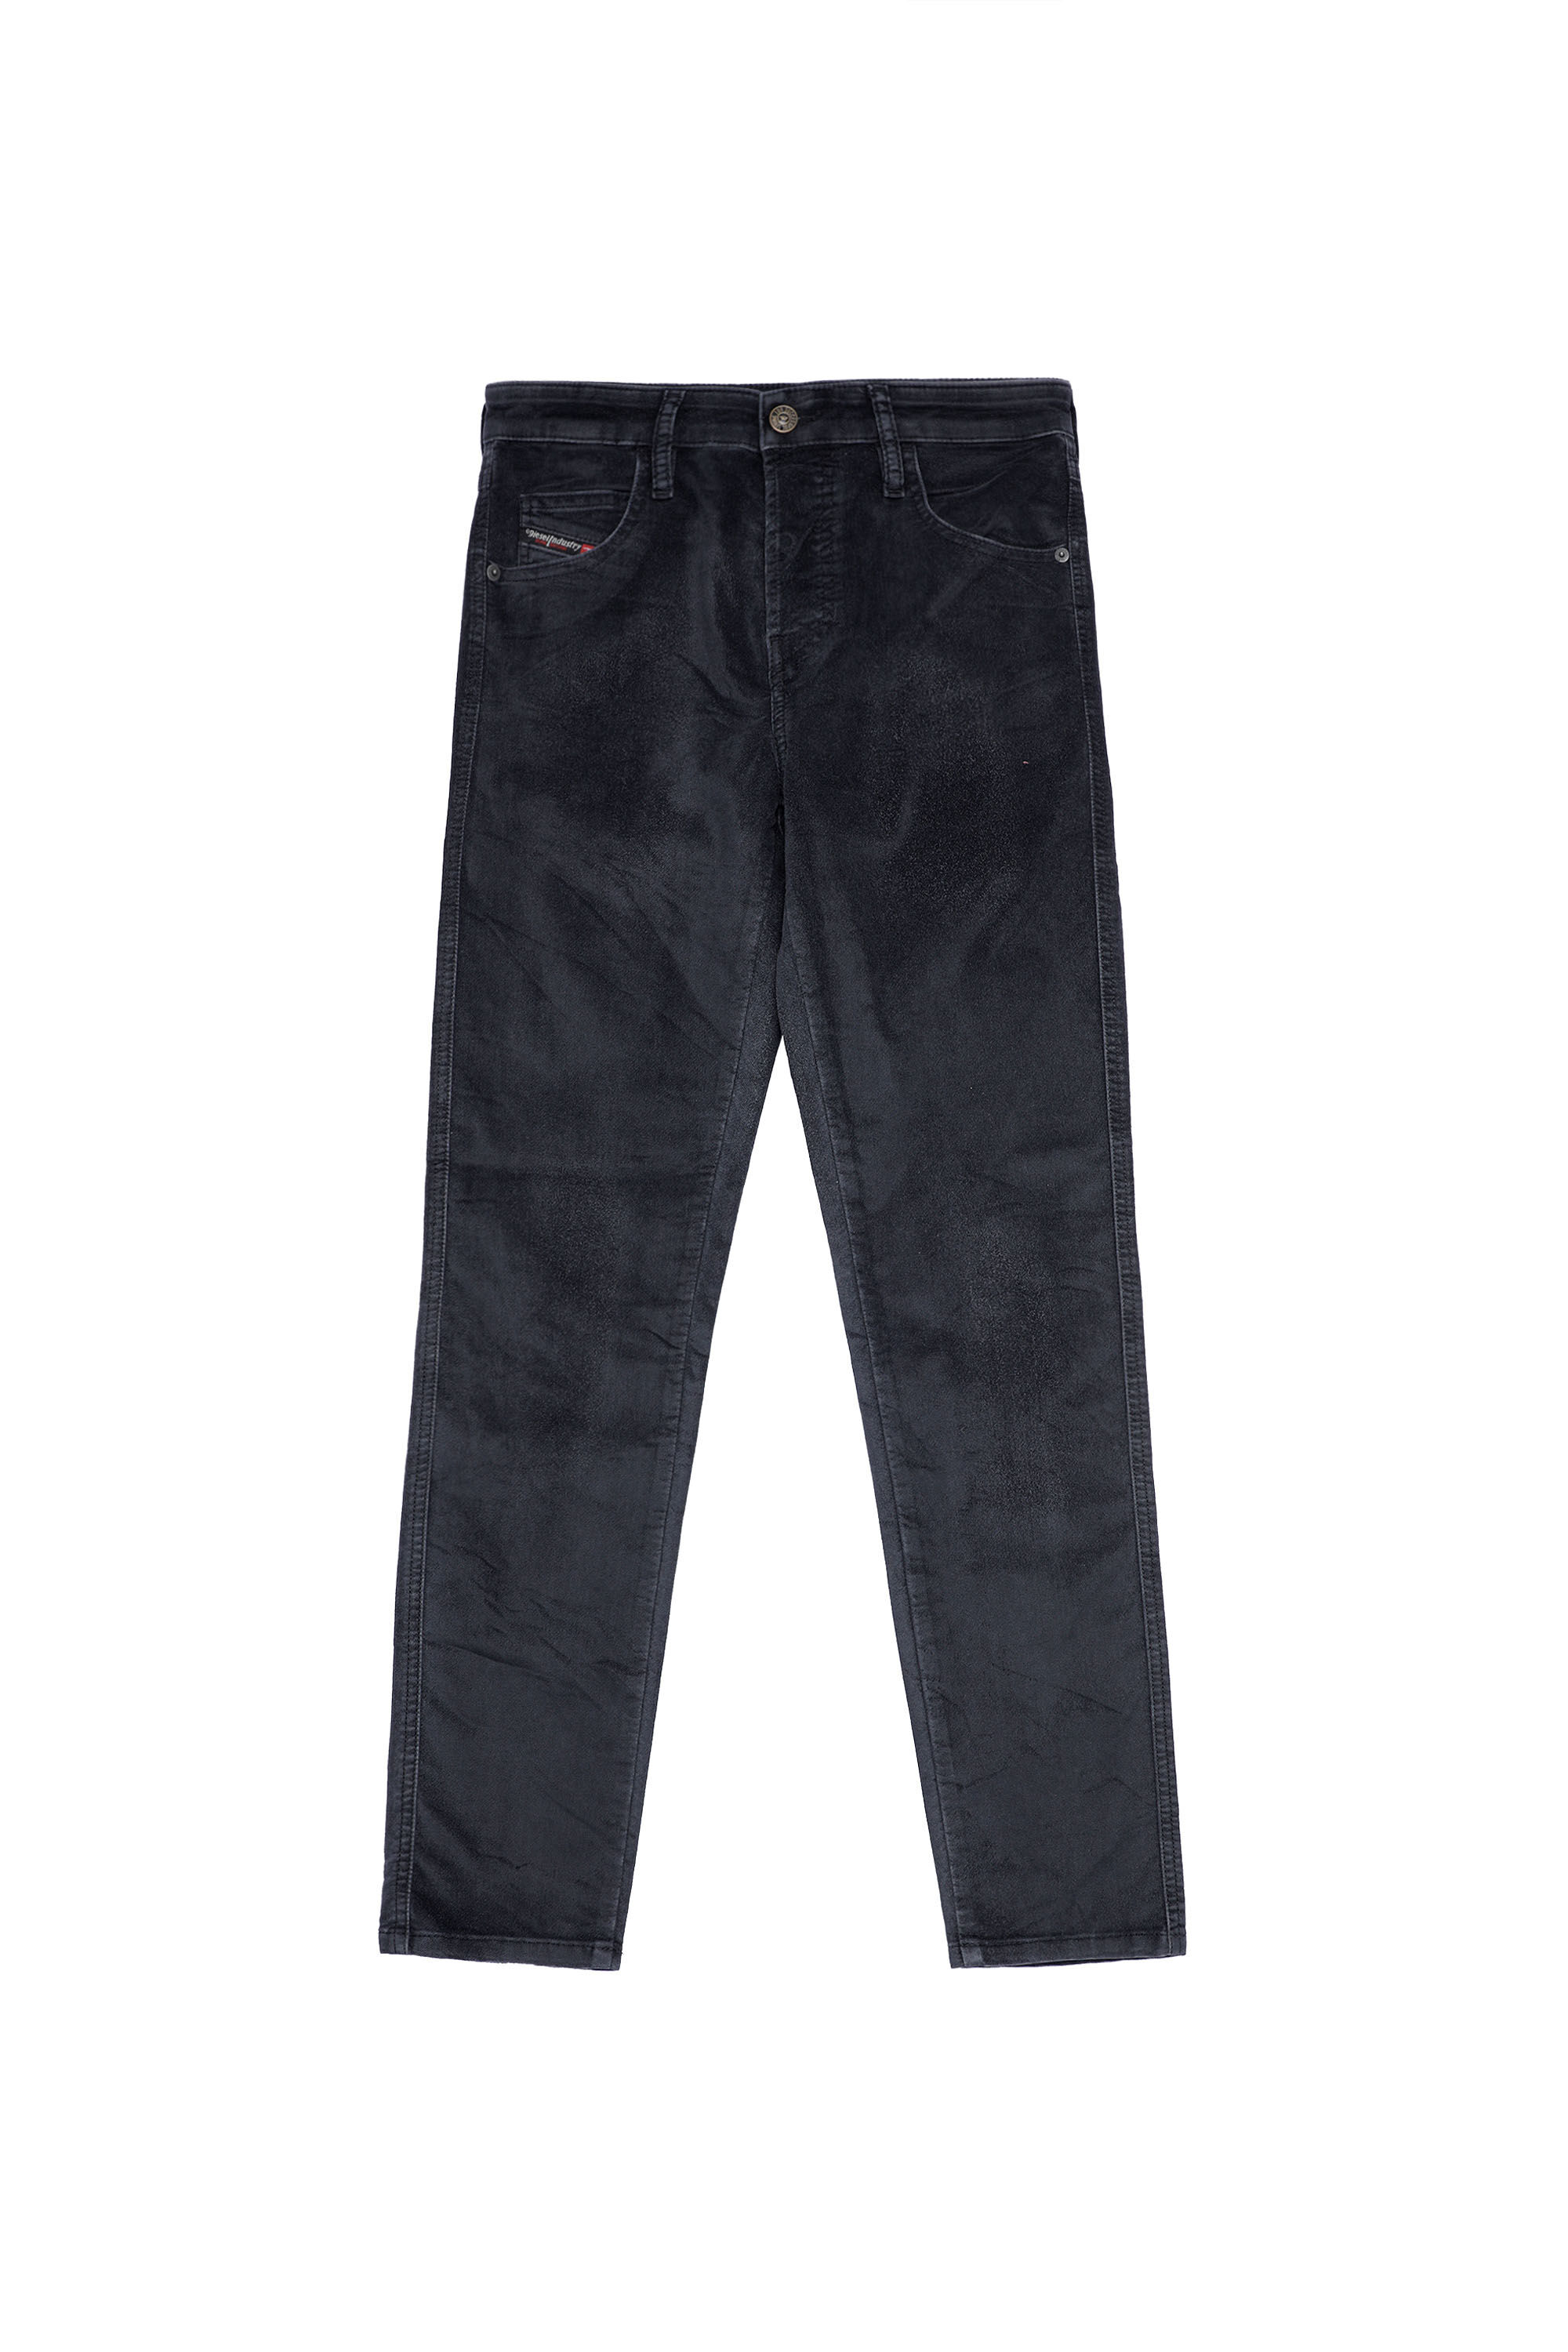 Diesel - Babhila Slim Jeans 069XI, Black/Dark grey - Image 2